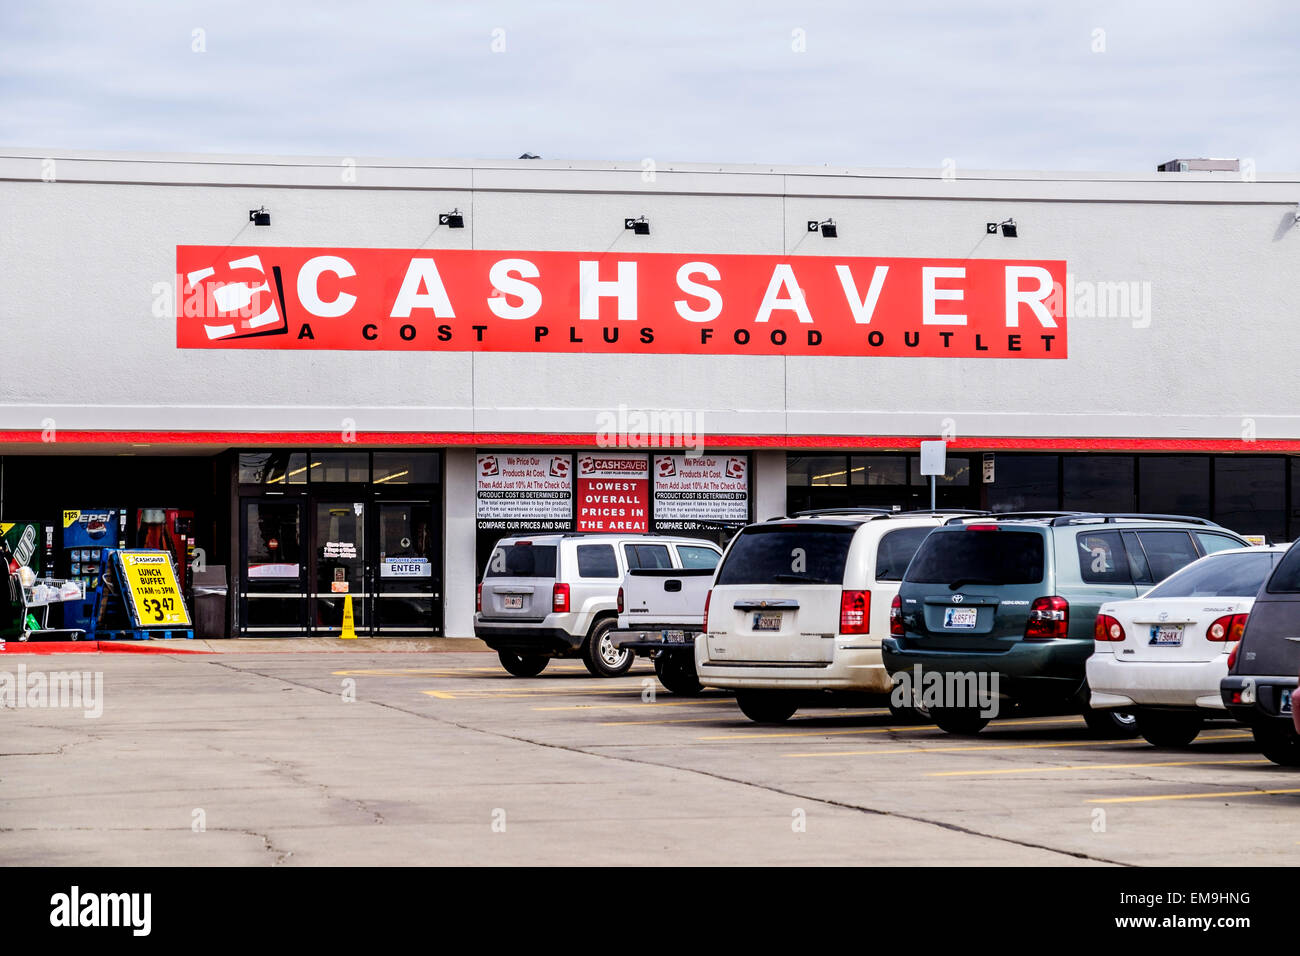 Une patrie marché alimentaire a changé en une Cashsaver marché alimentaire. Les clients paient des frais article plus de dix pour cent. Oklahoma City, Oklahoma, USA. Banque D'Images